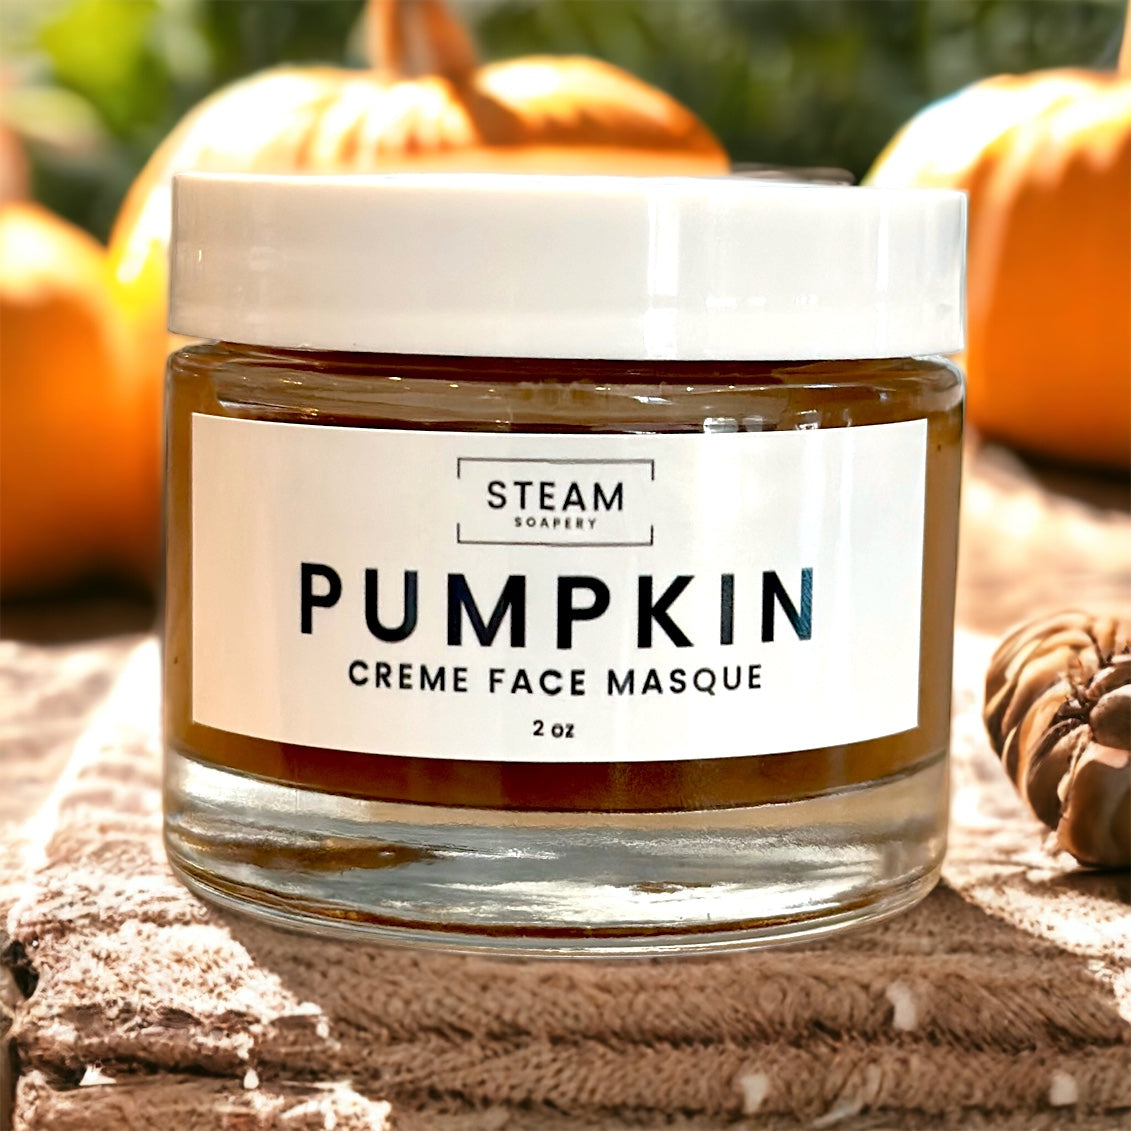 Pumpkin Creme Face Masque